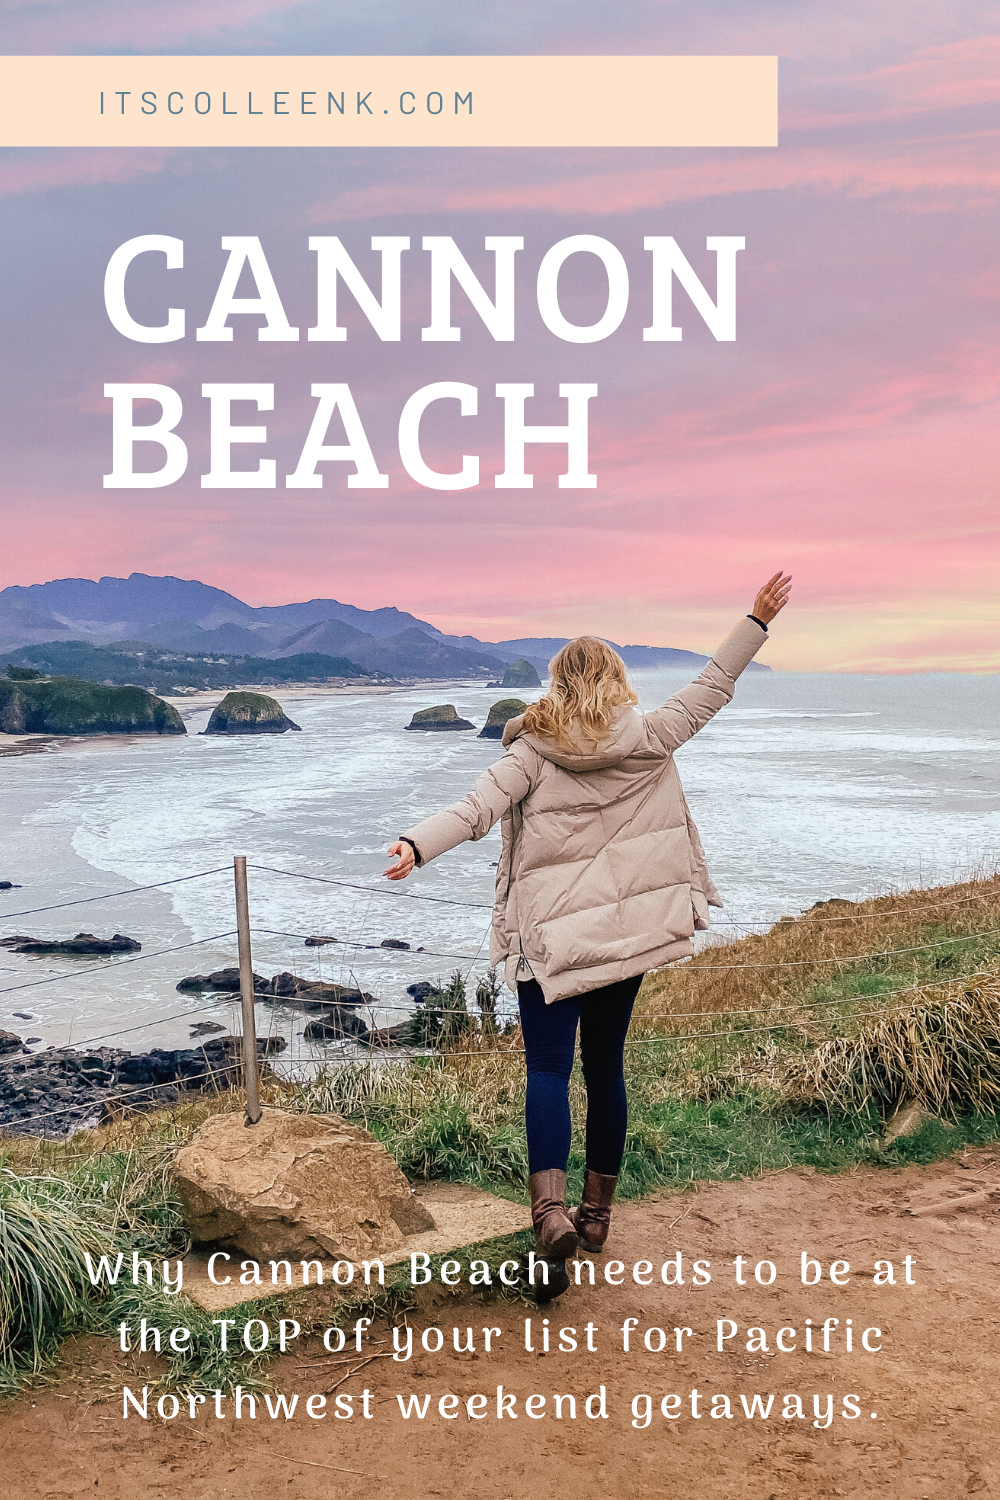 cannon beach overlooking ocean, sunset, haystack rock, hallmark resort review 